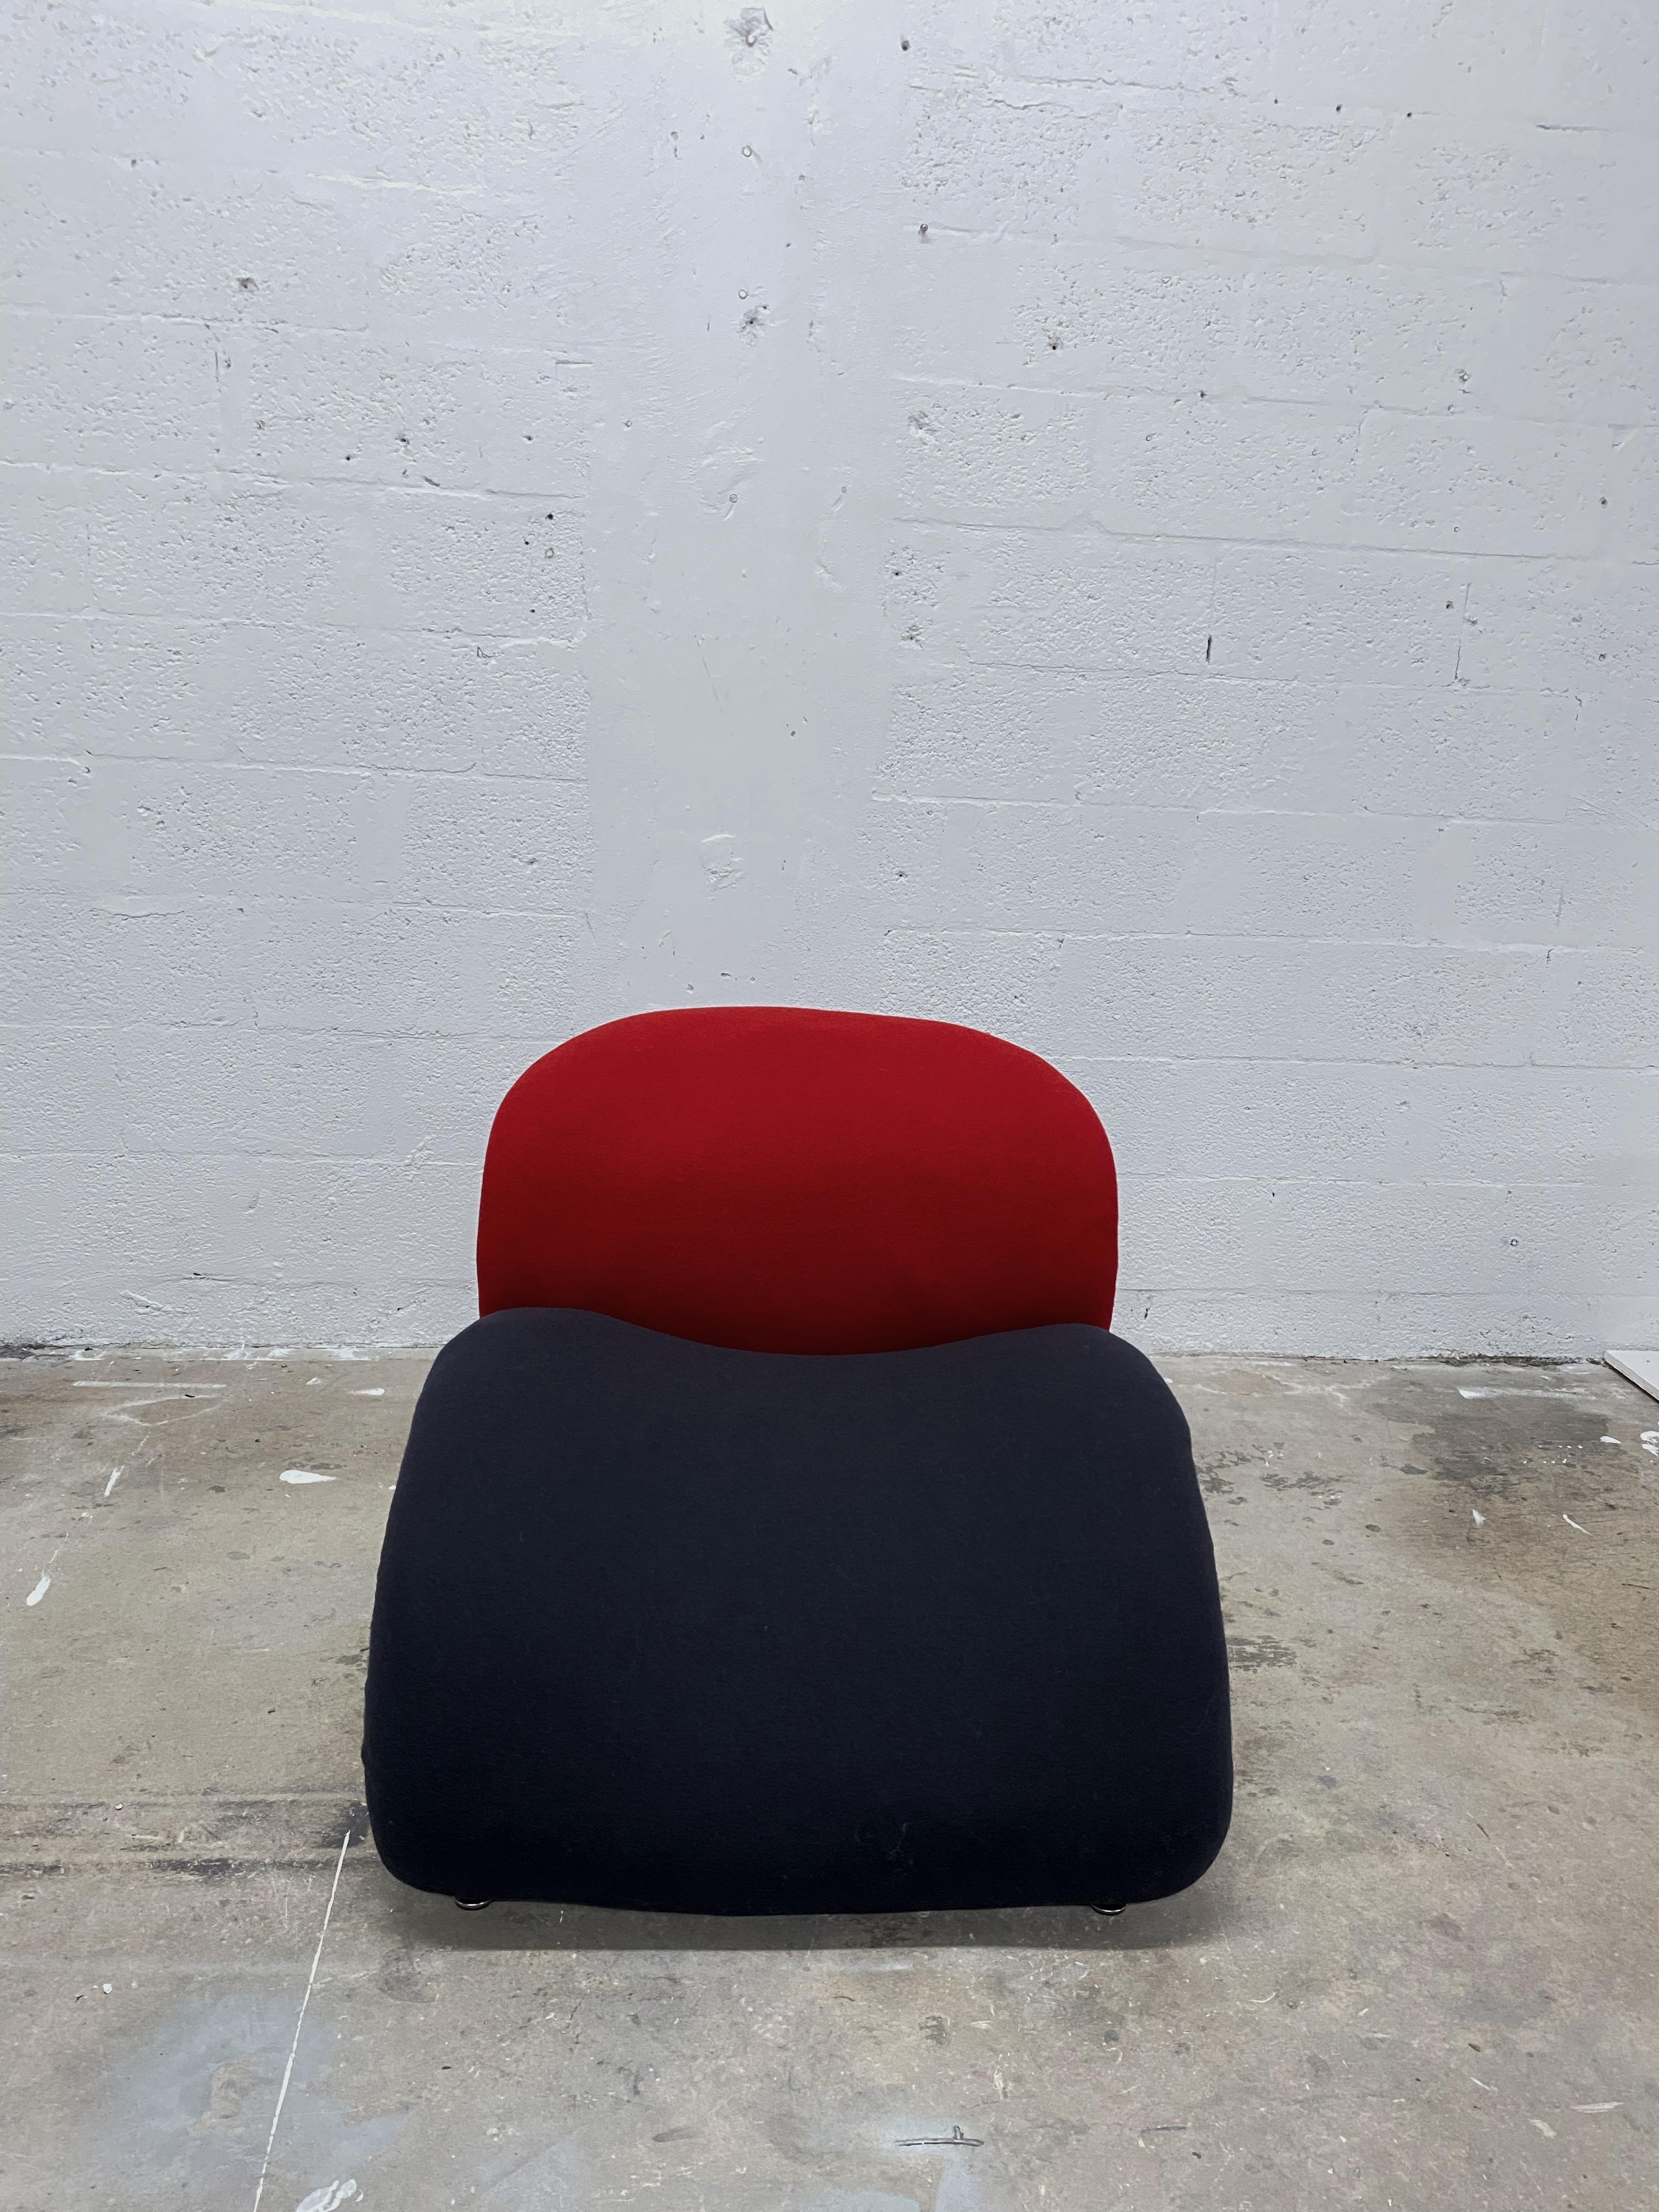 Chaise longue originale Pierre Paulin Le Chat fabriquée par Artifort. La chaise longue a été restaurée et nouvellement tapissée dans le tissu Tonus 4 de Nina Koppel pour Artifort ; noir (# 0690) pour l'assise et rouge (# 1030) pour le dossier.